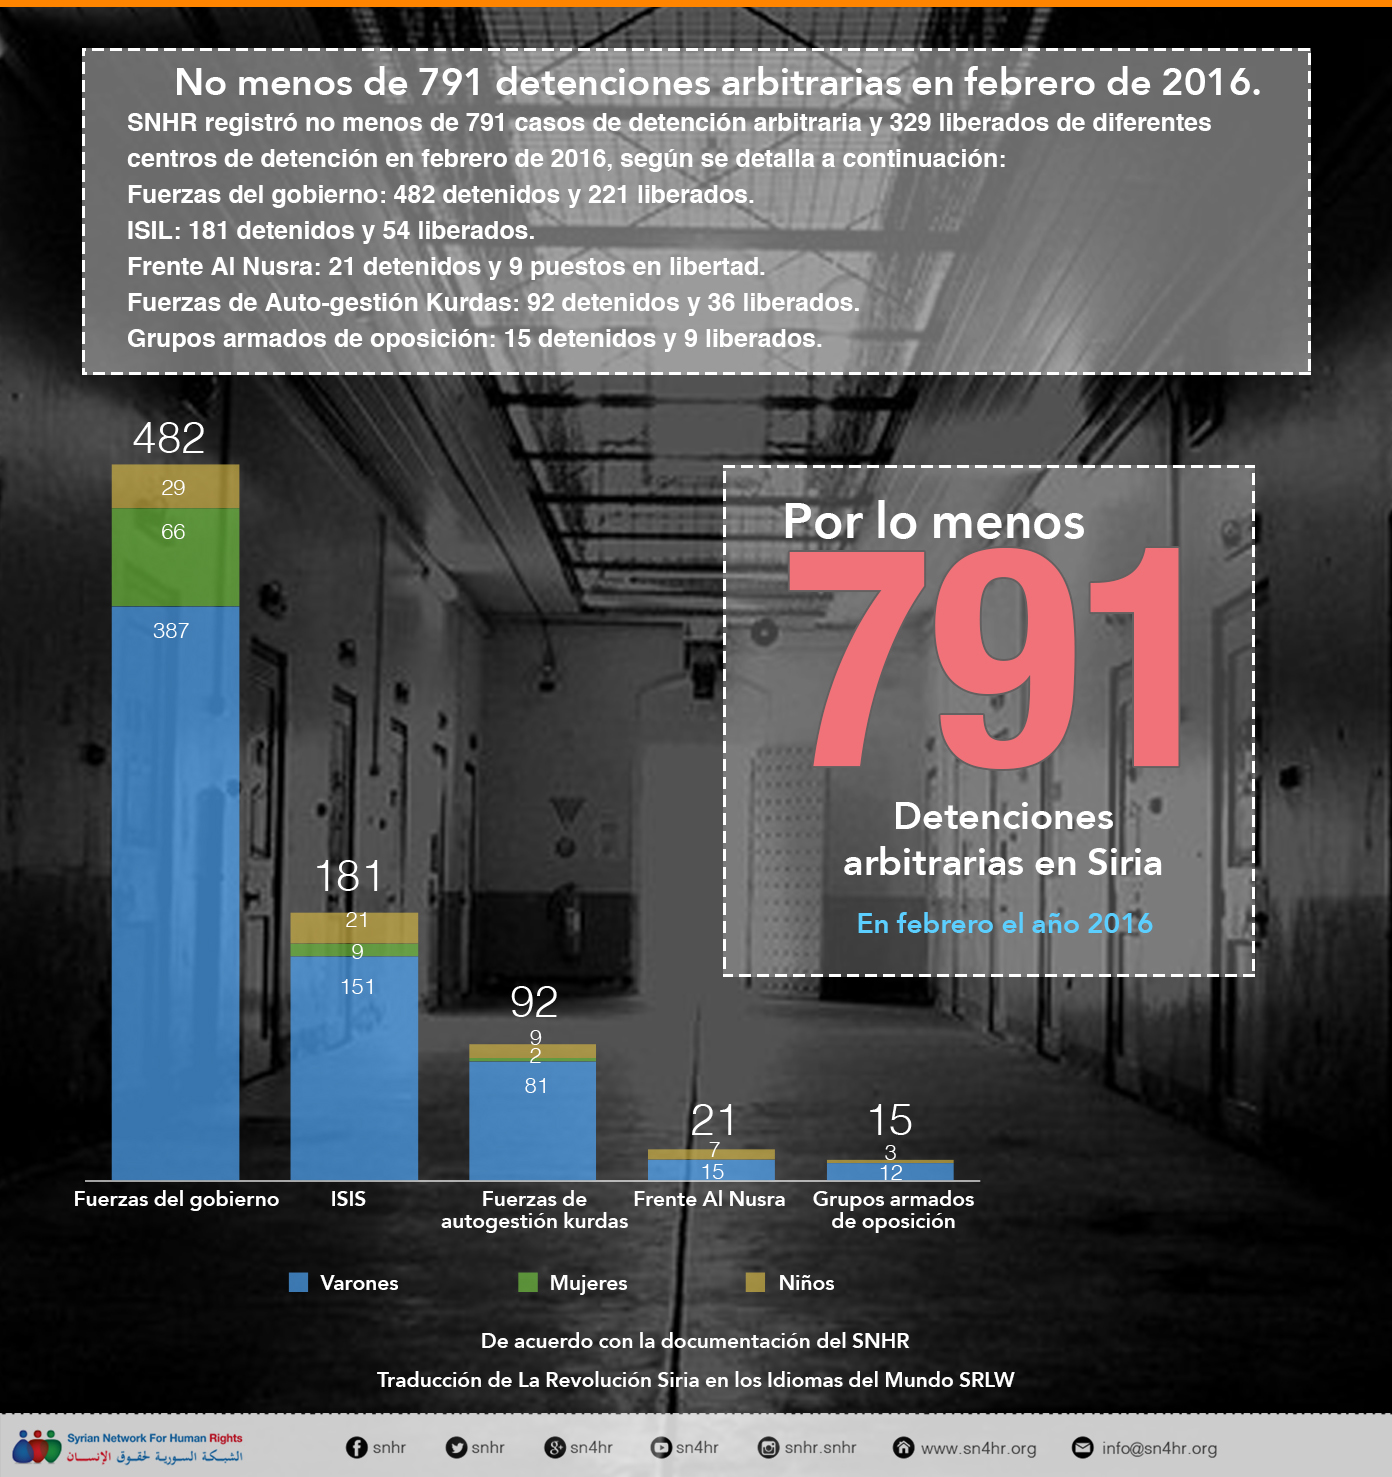 No menos de 791 detenciones arbitrarias en febrero de 2016